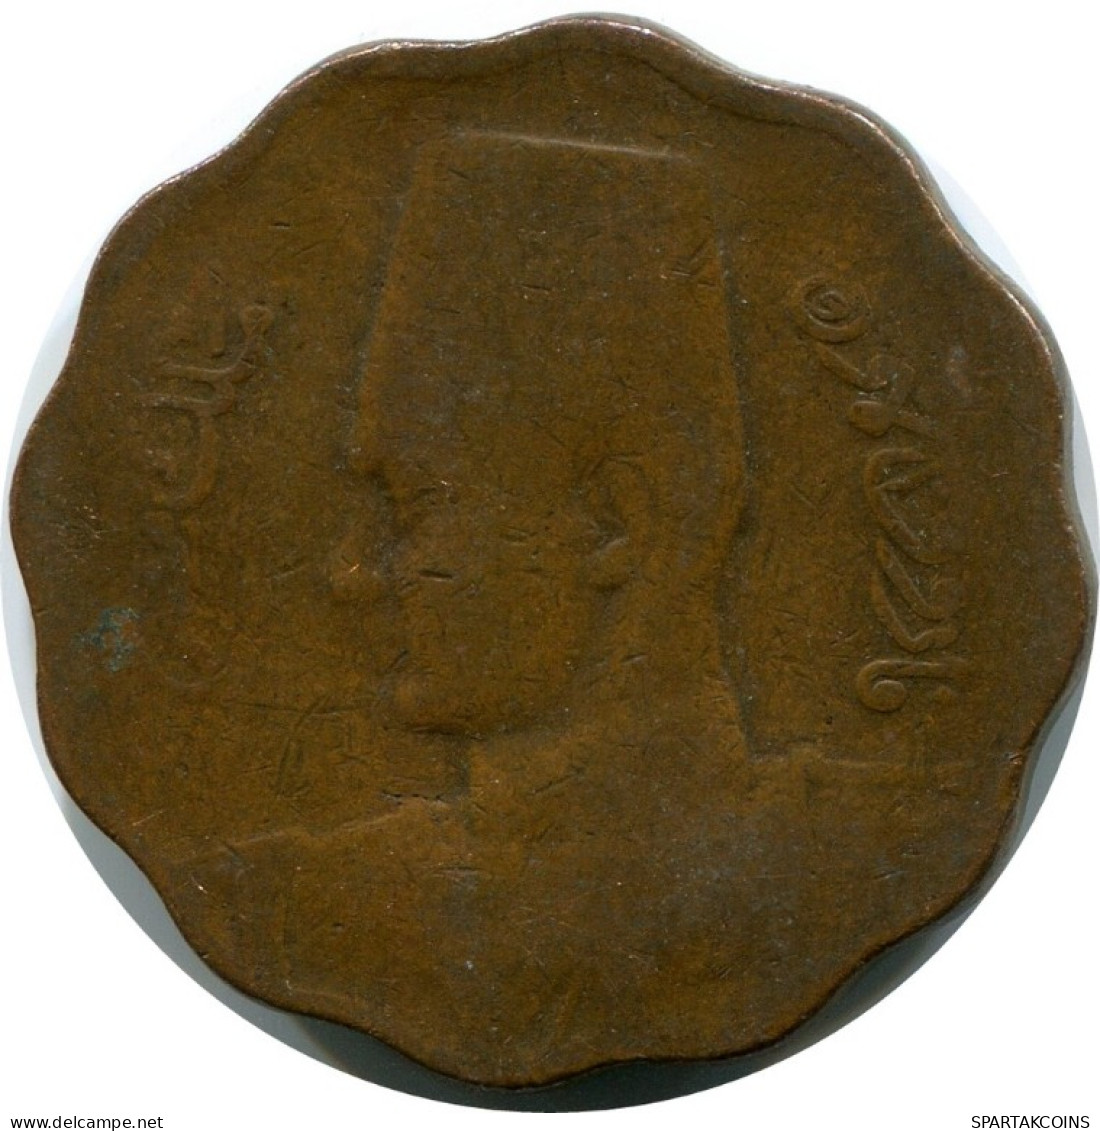 10 MILLIEMES 1943 EGYPT Islamic Coin #AH610.3.U.A - Egypt